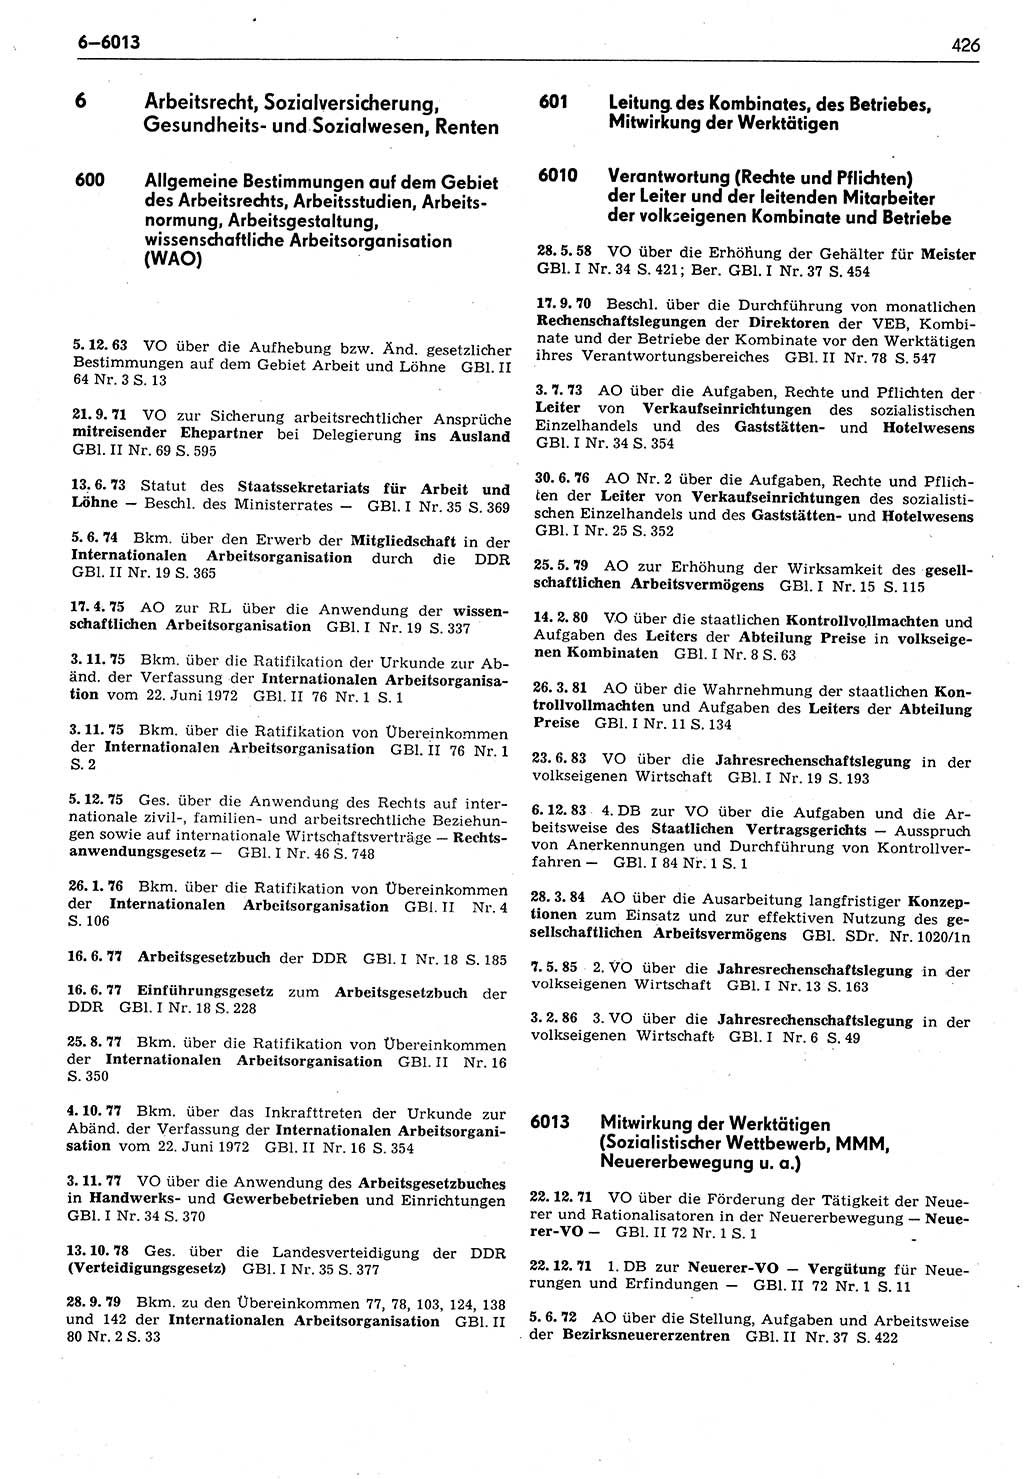 Das geltende Recht der Deutschen Demokratischen Republik (DDR) 1949-1988, Seite 426 (Gelt. R. DDR 1949-1988, S. 426)